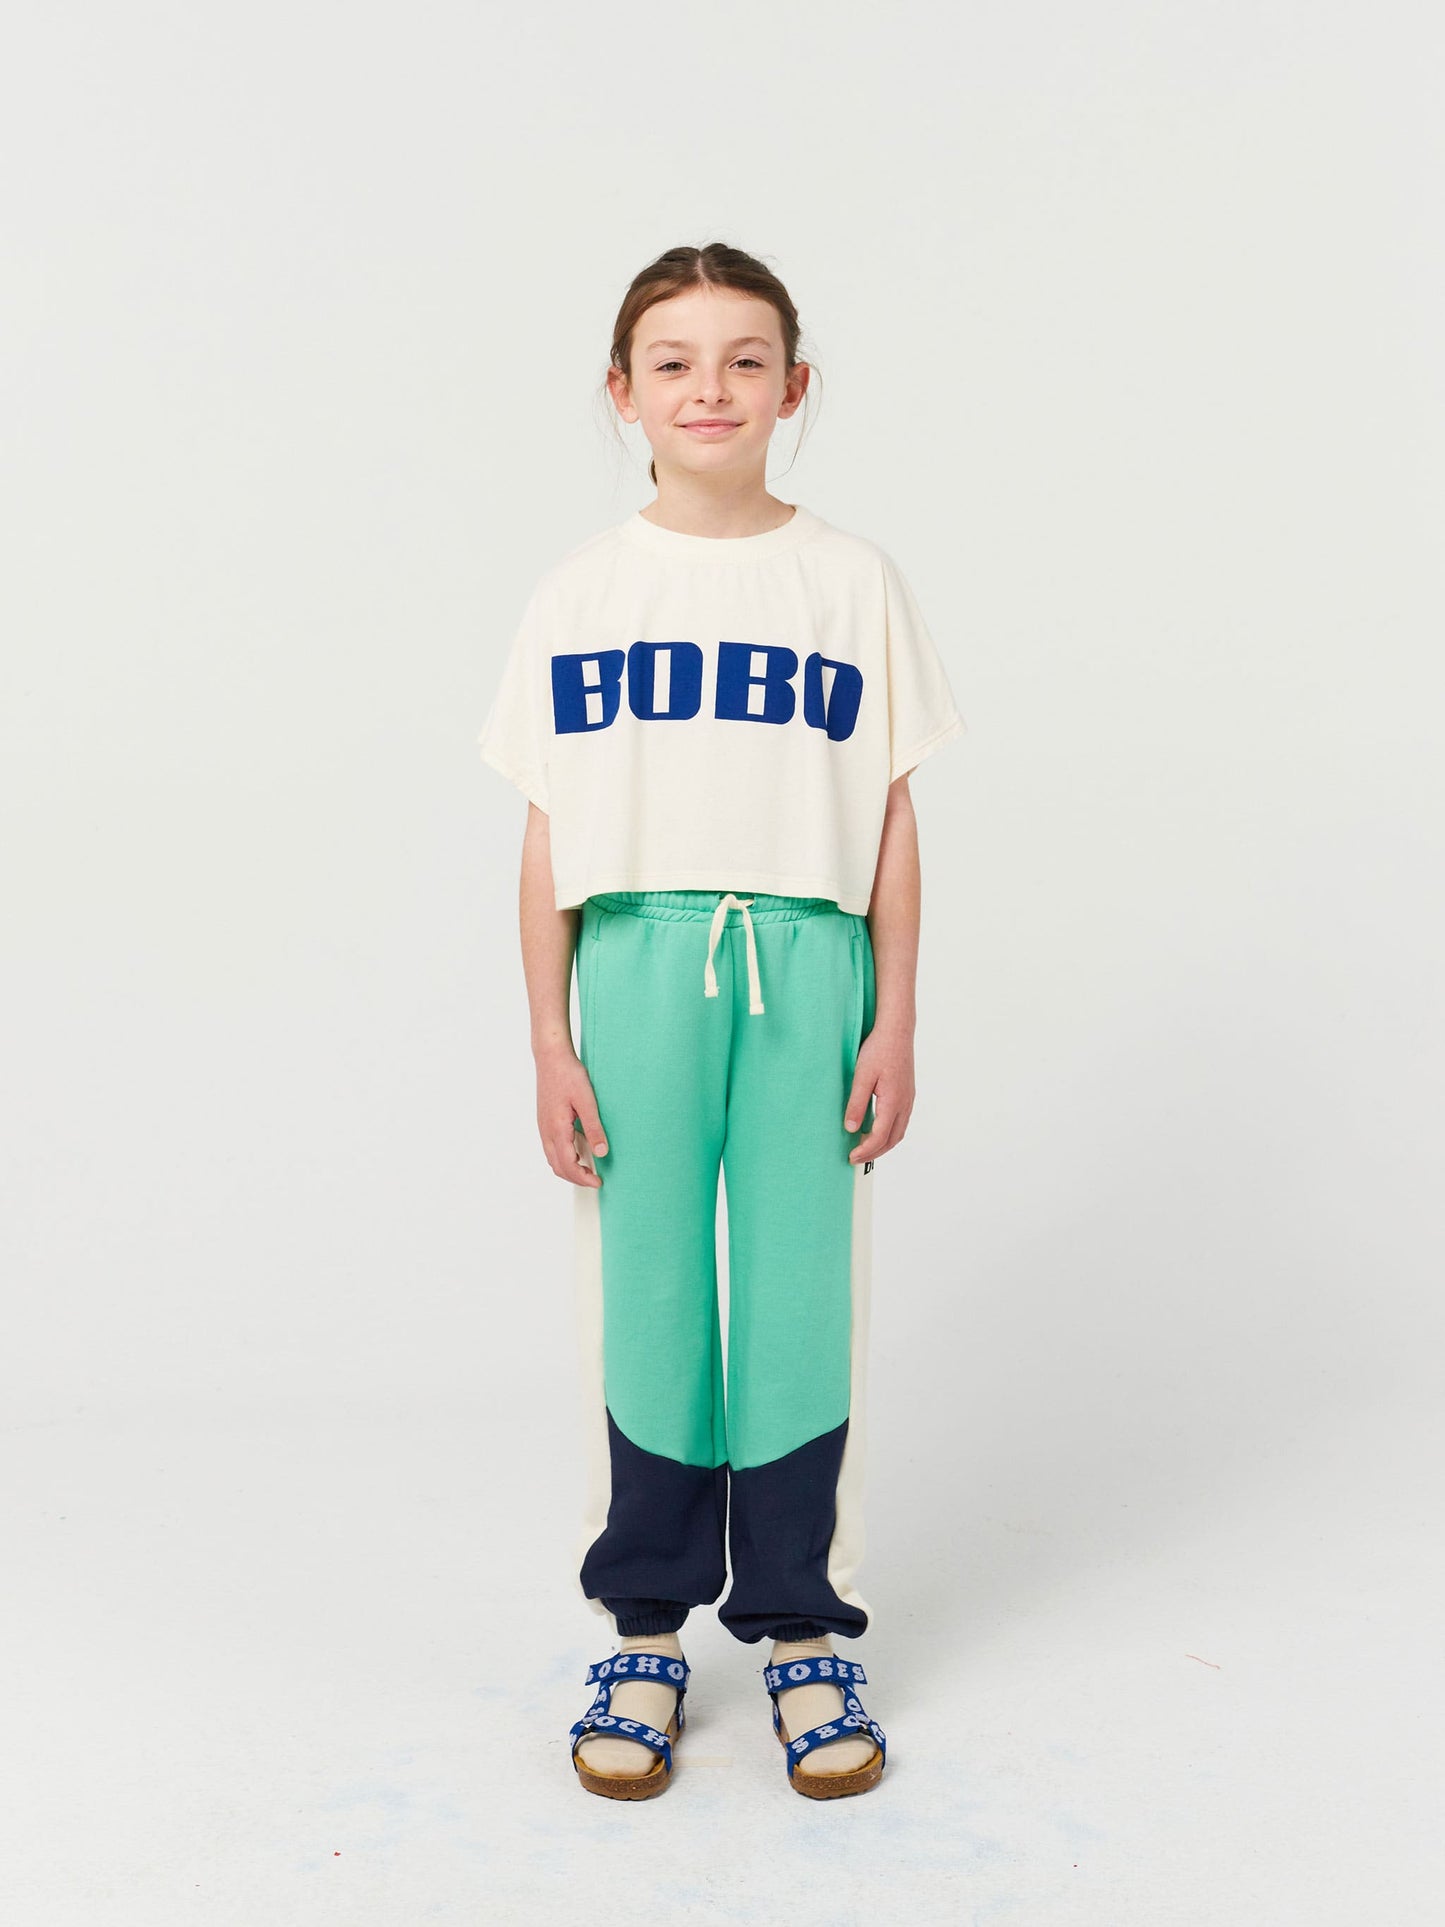 Pantalons de xandall Bobo blocs de color